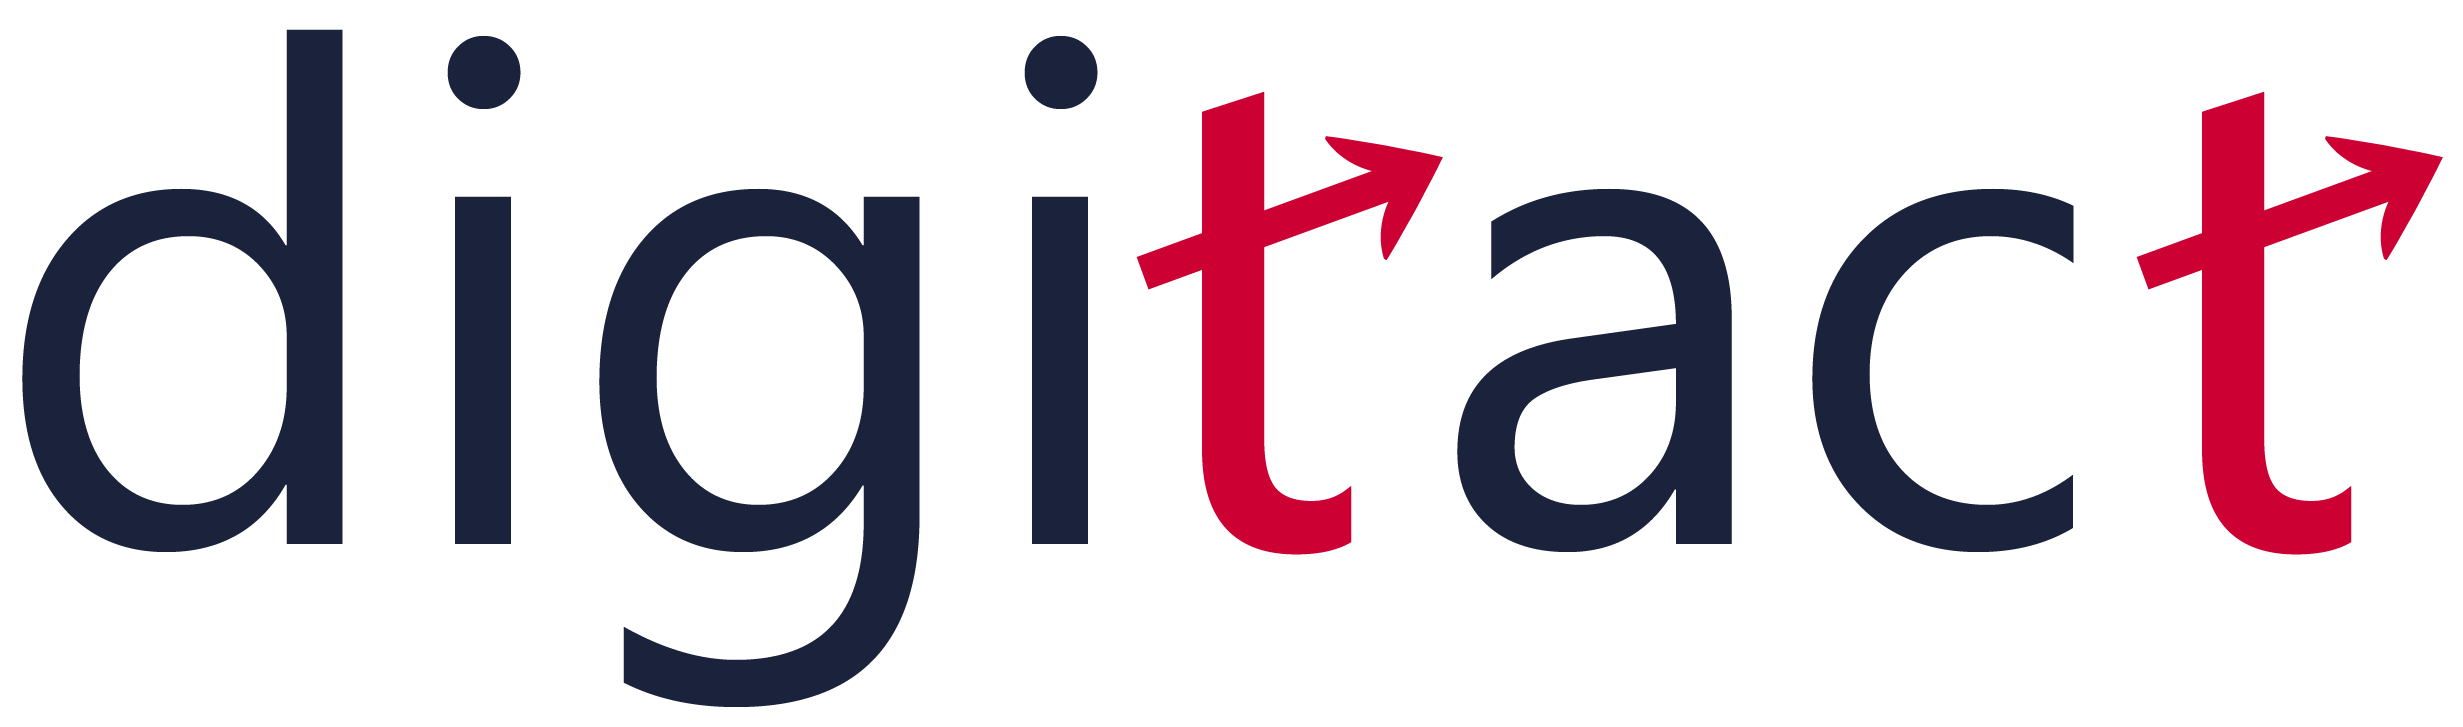 large digitact logo